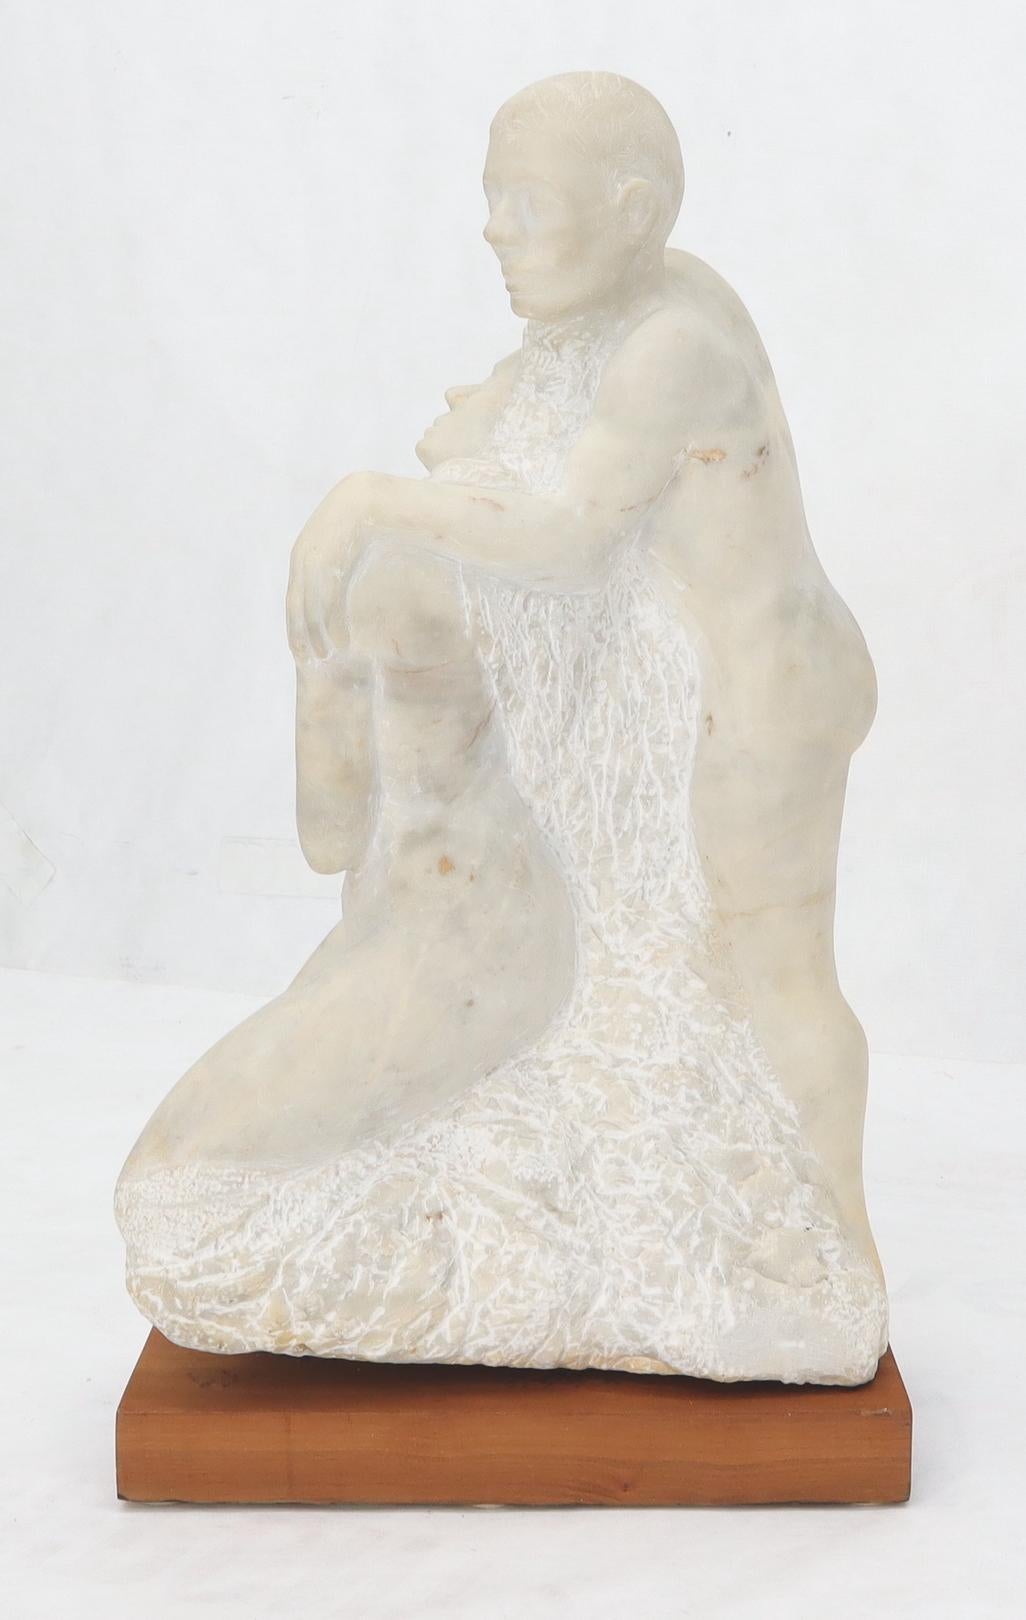 Geschnitzte Marmorskulptur eines sich umarmenden nackten Mannes und einer Frau.